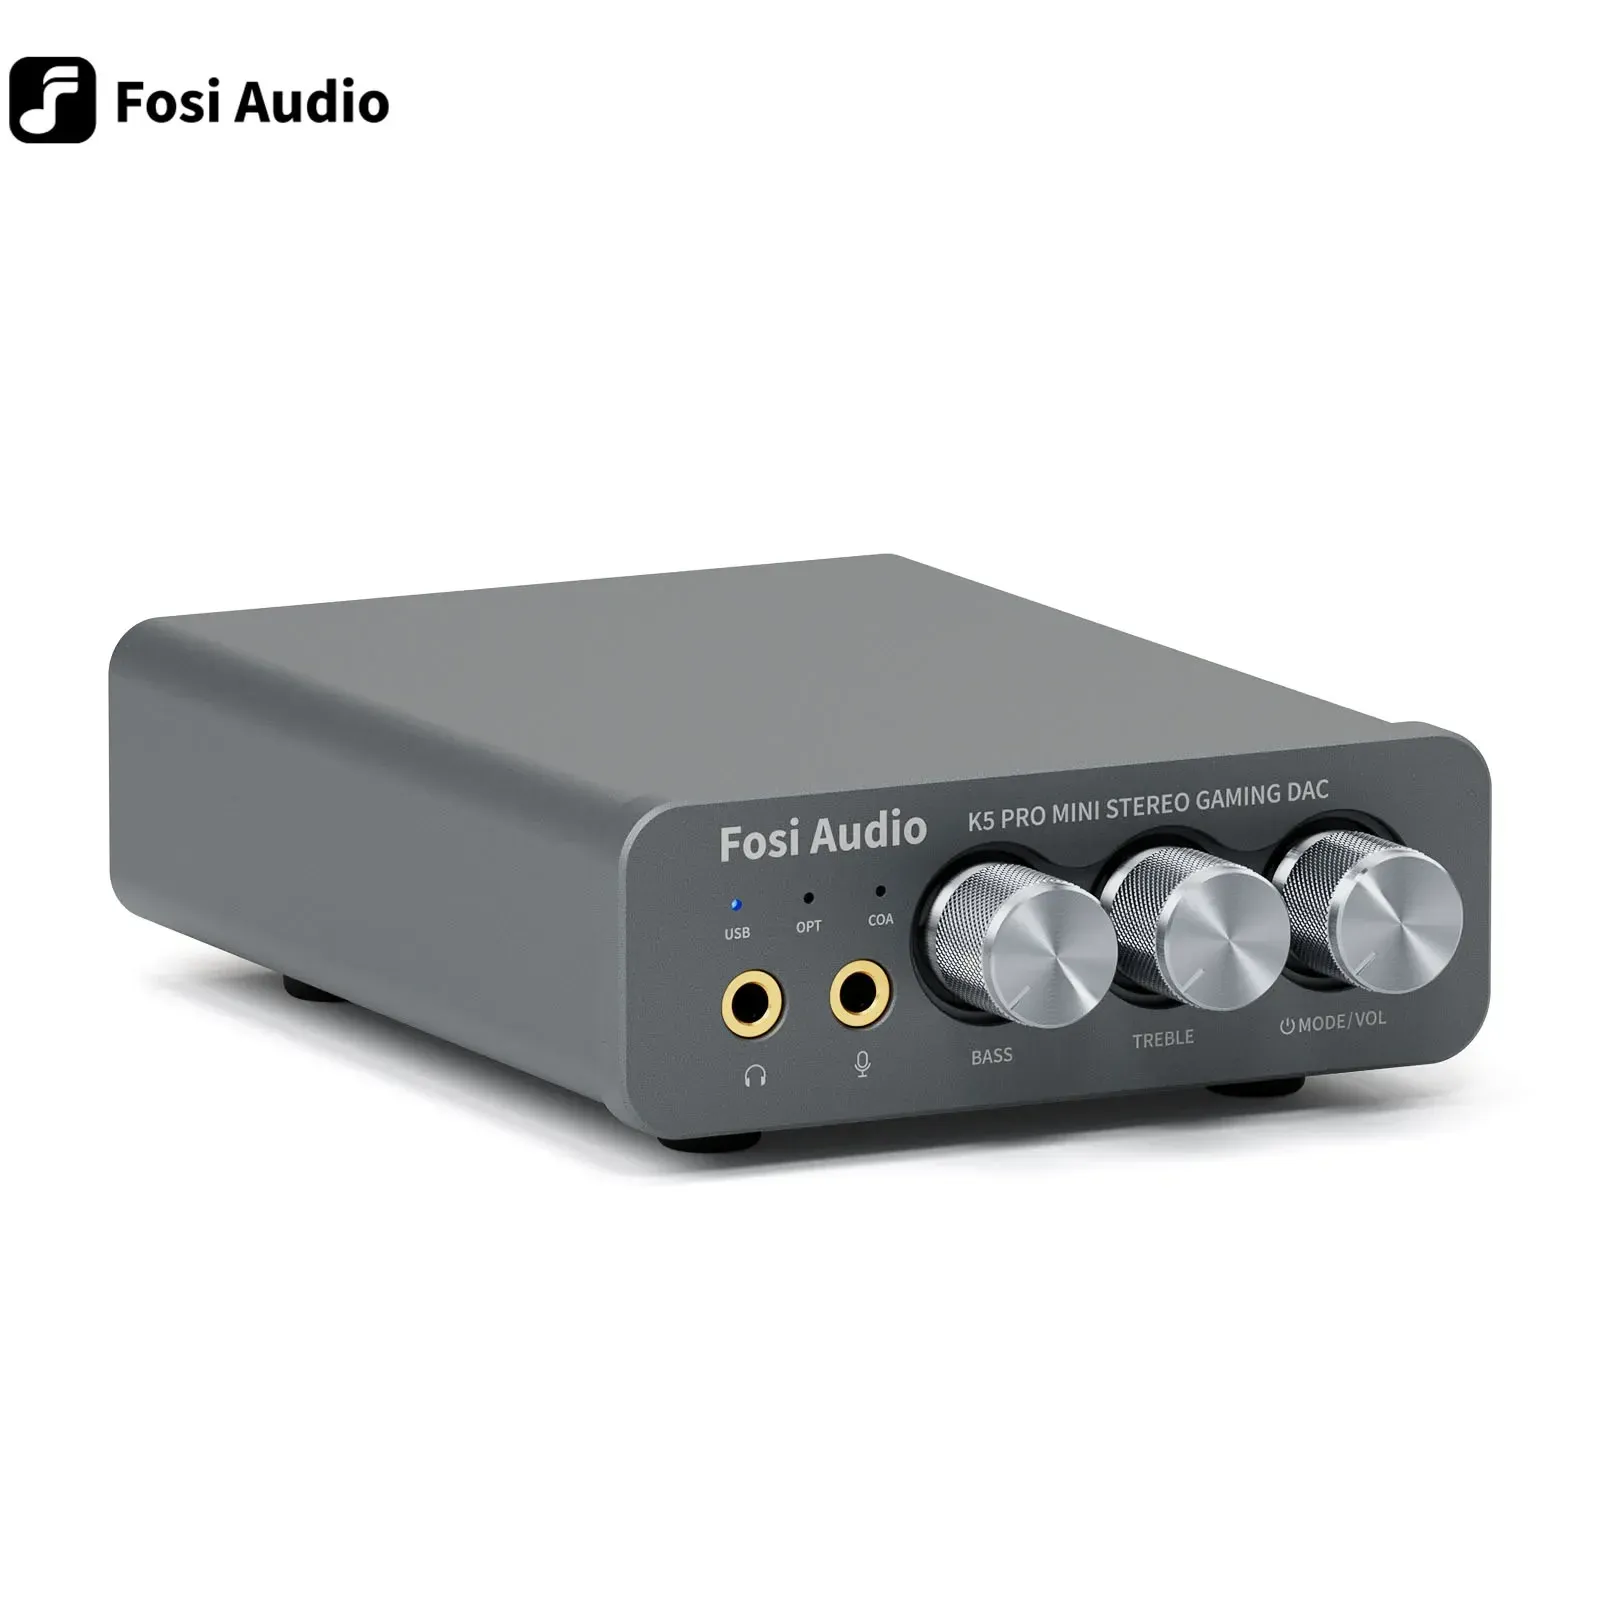 Amplificateur Fosi Audio Q4 Mini stéréo USB Gaming DAC casque Adaptateur de convertisseur audio pour la maison / les haut-parleurs Powered / Active